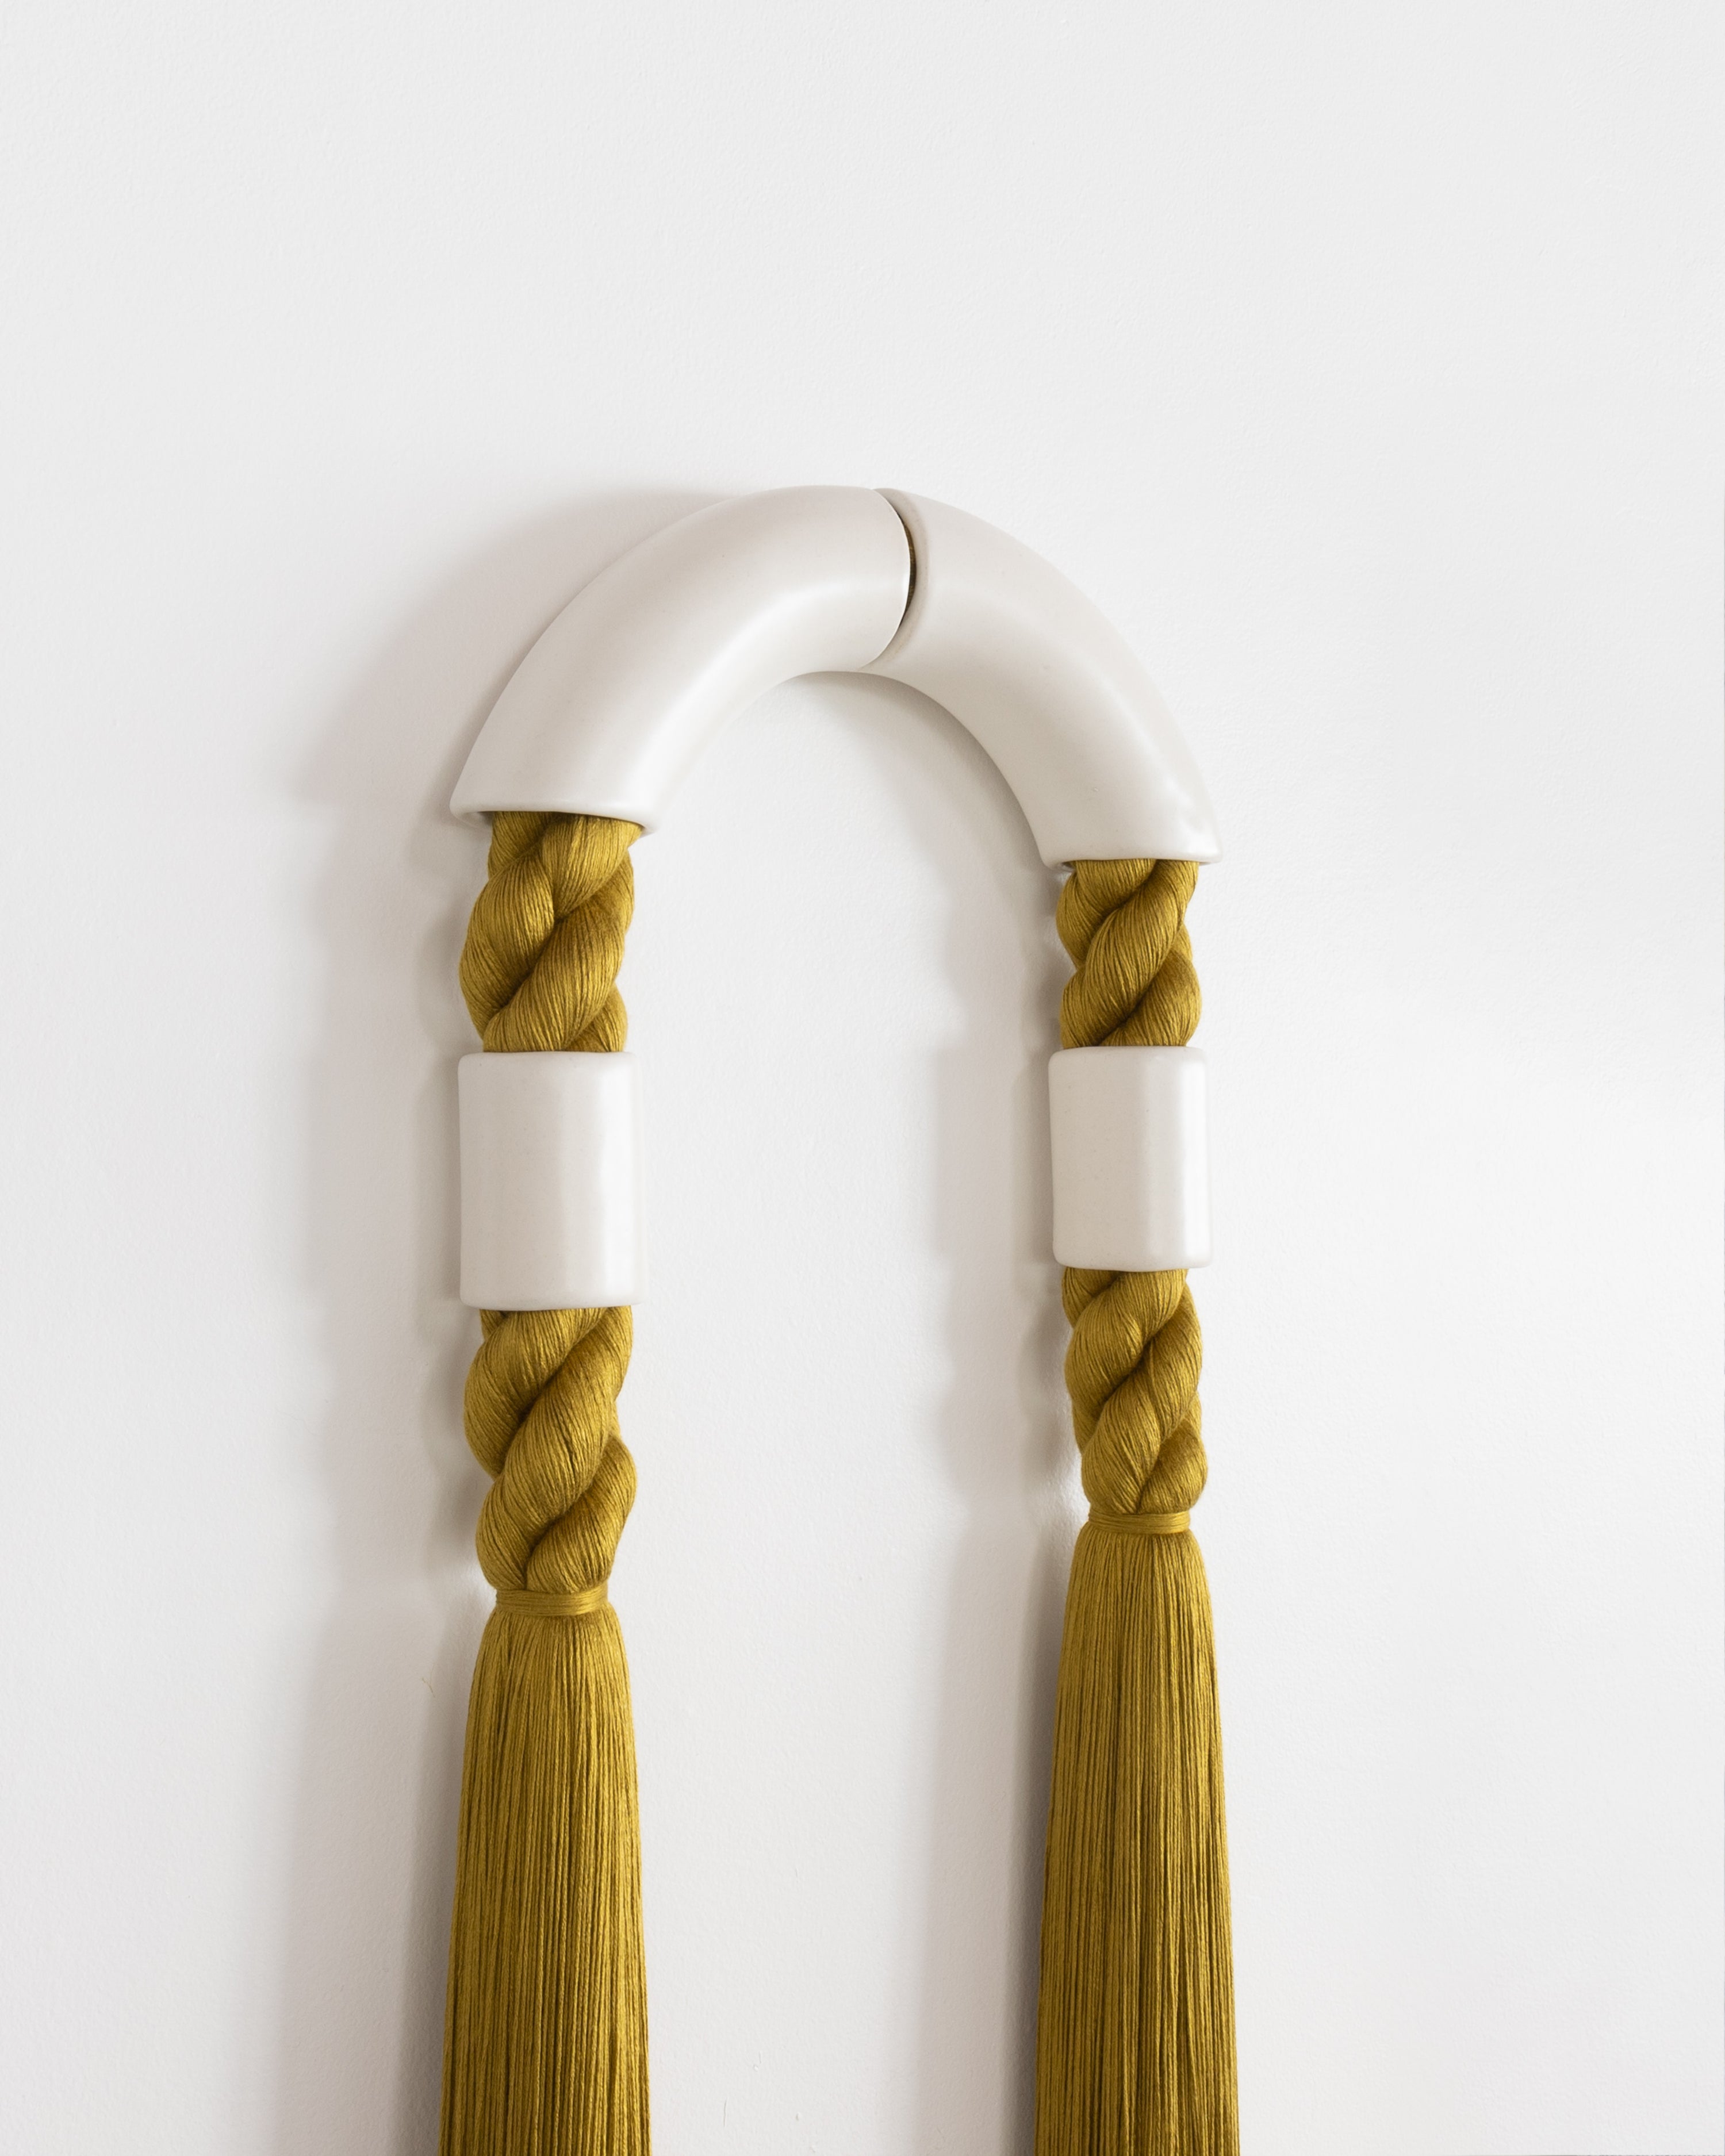 Medium White Ceramic Illusion Arch (Chartreuse Rope)